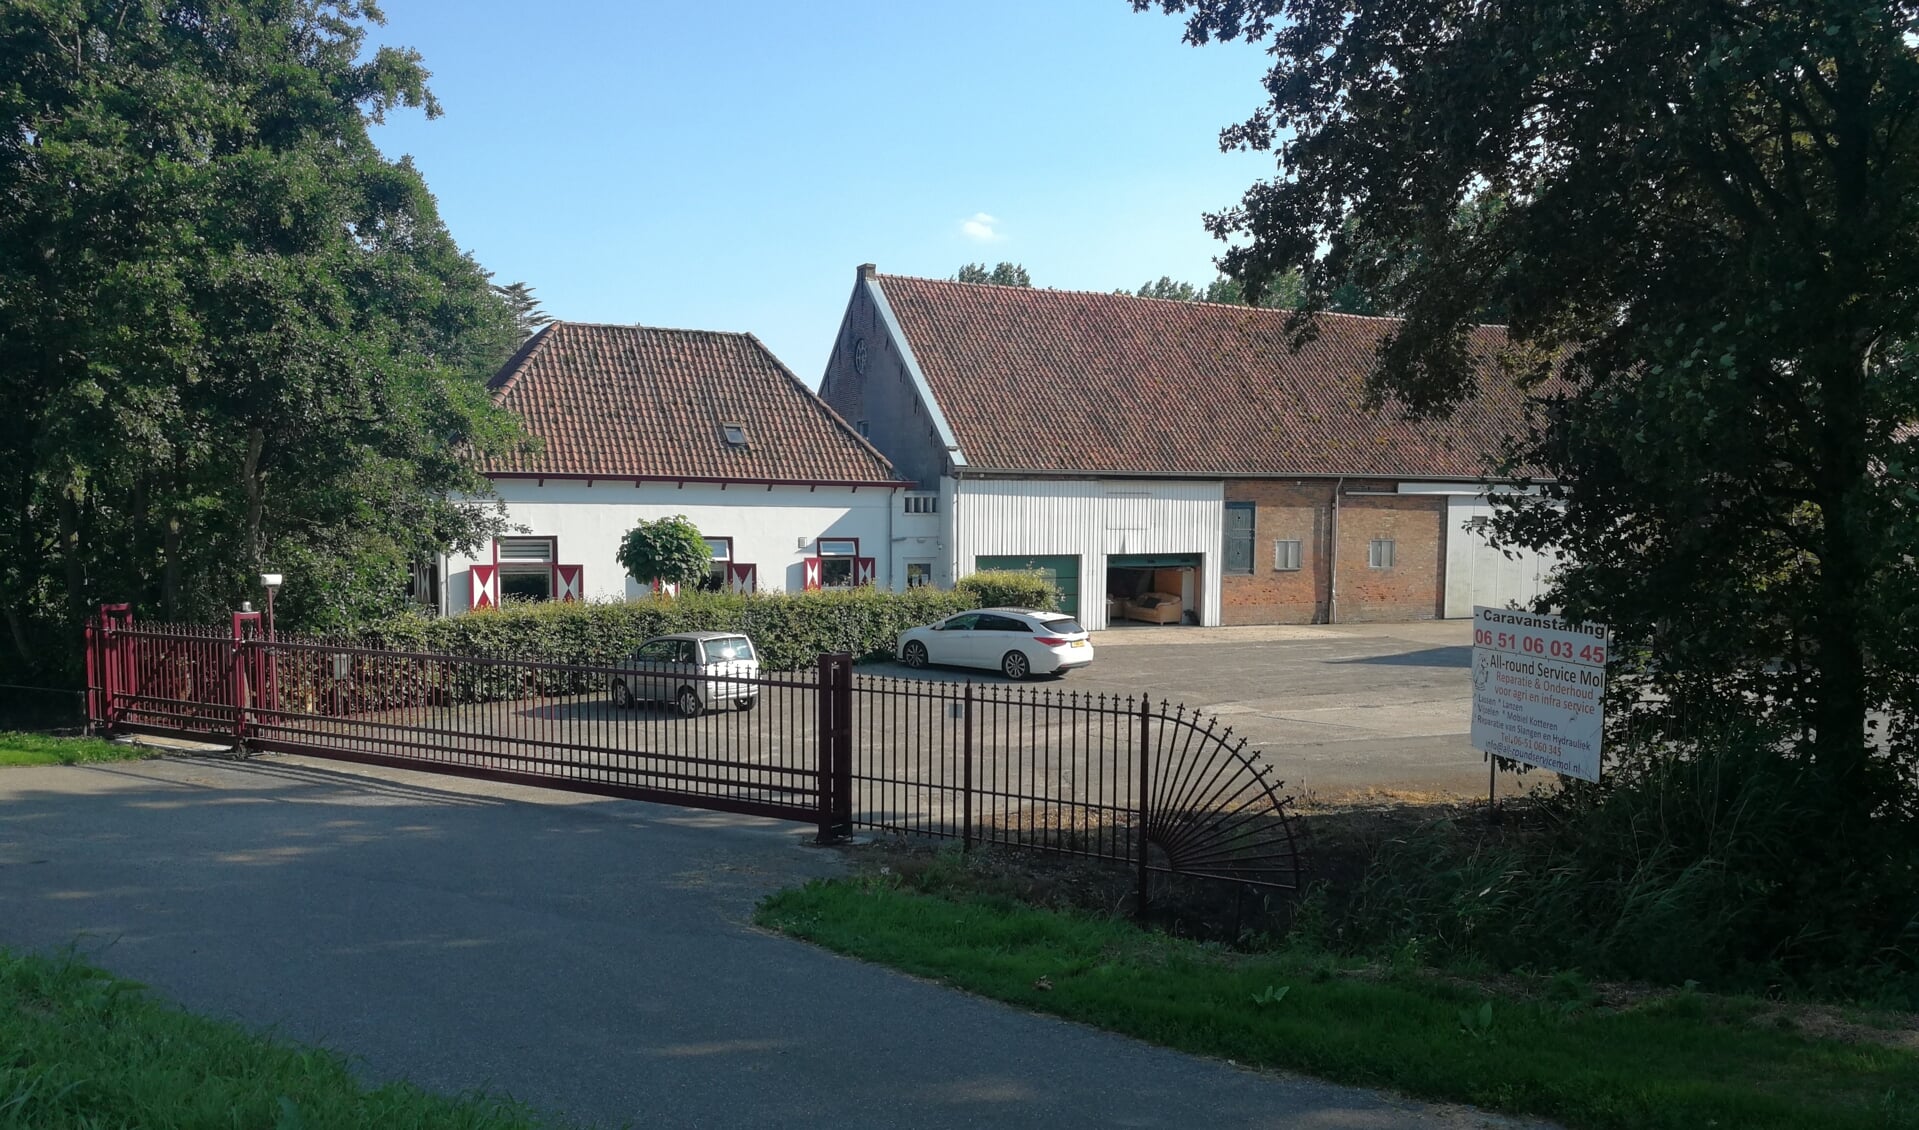 Woonboerderij 'de vrije veste'op de Stadsedijk sluit per 1 juli haar deuren.